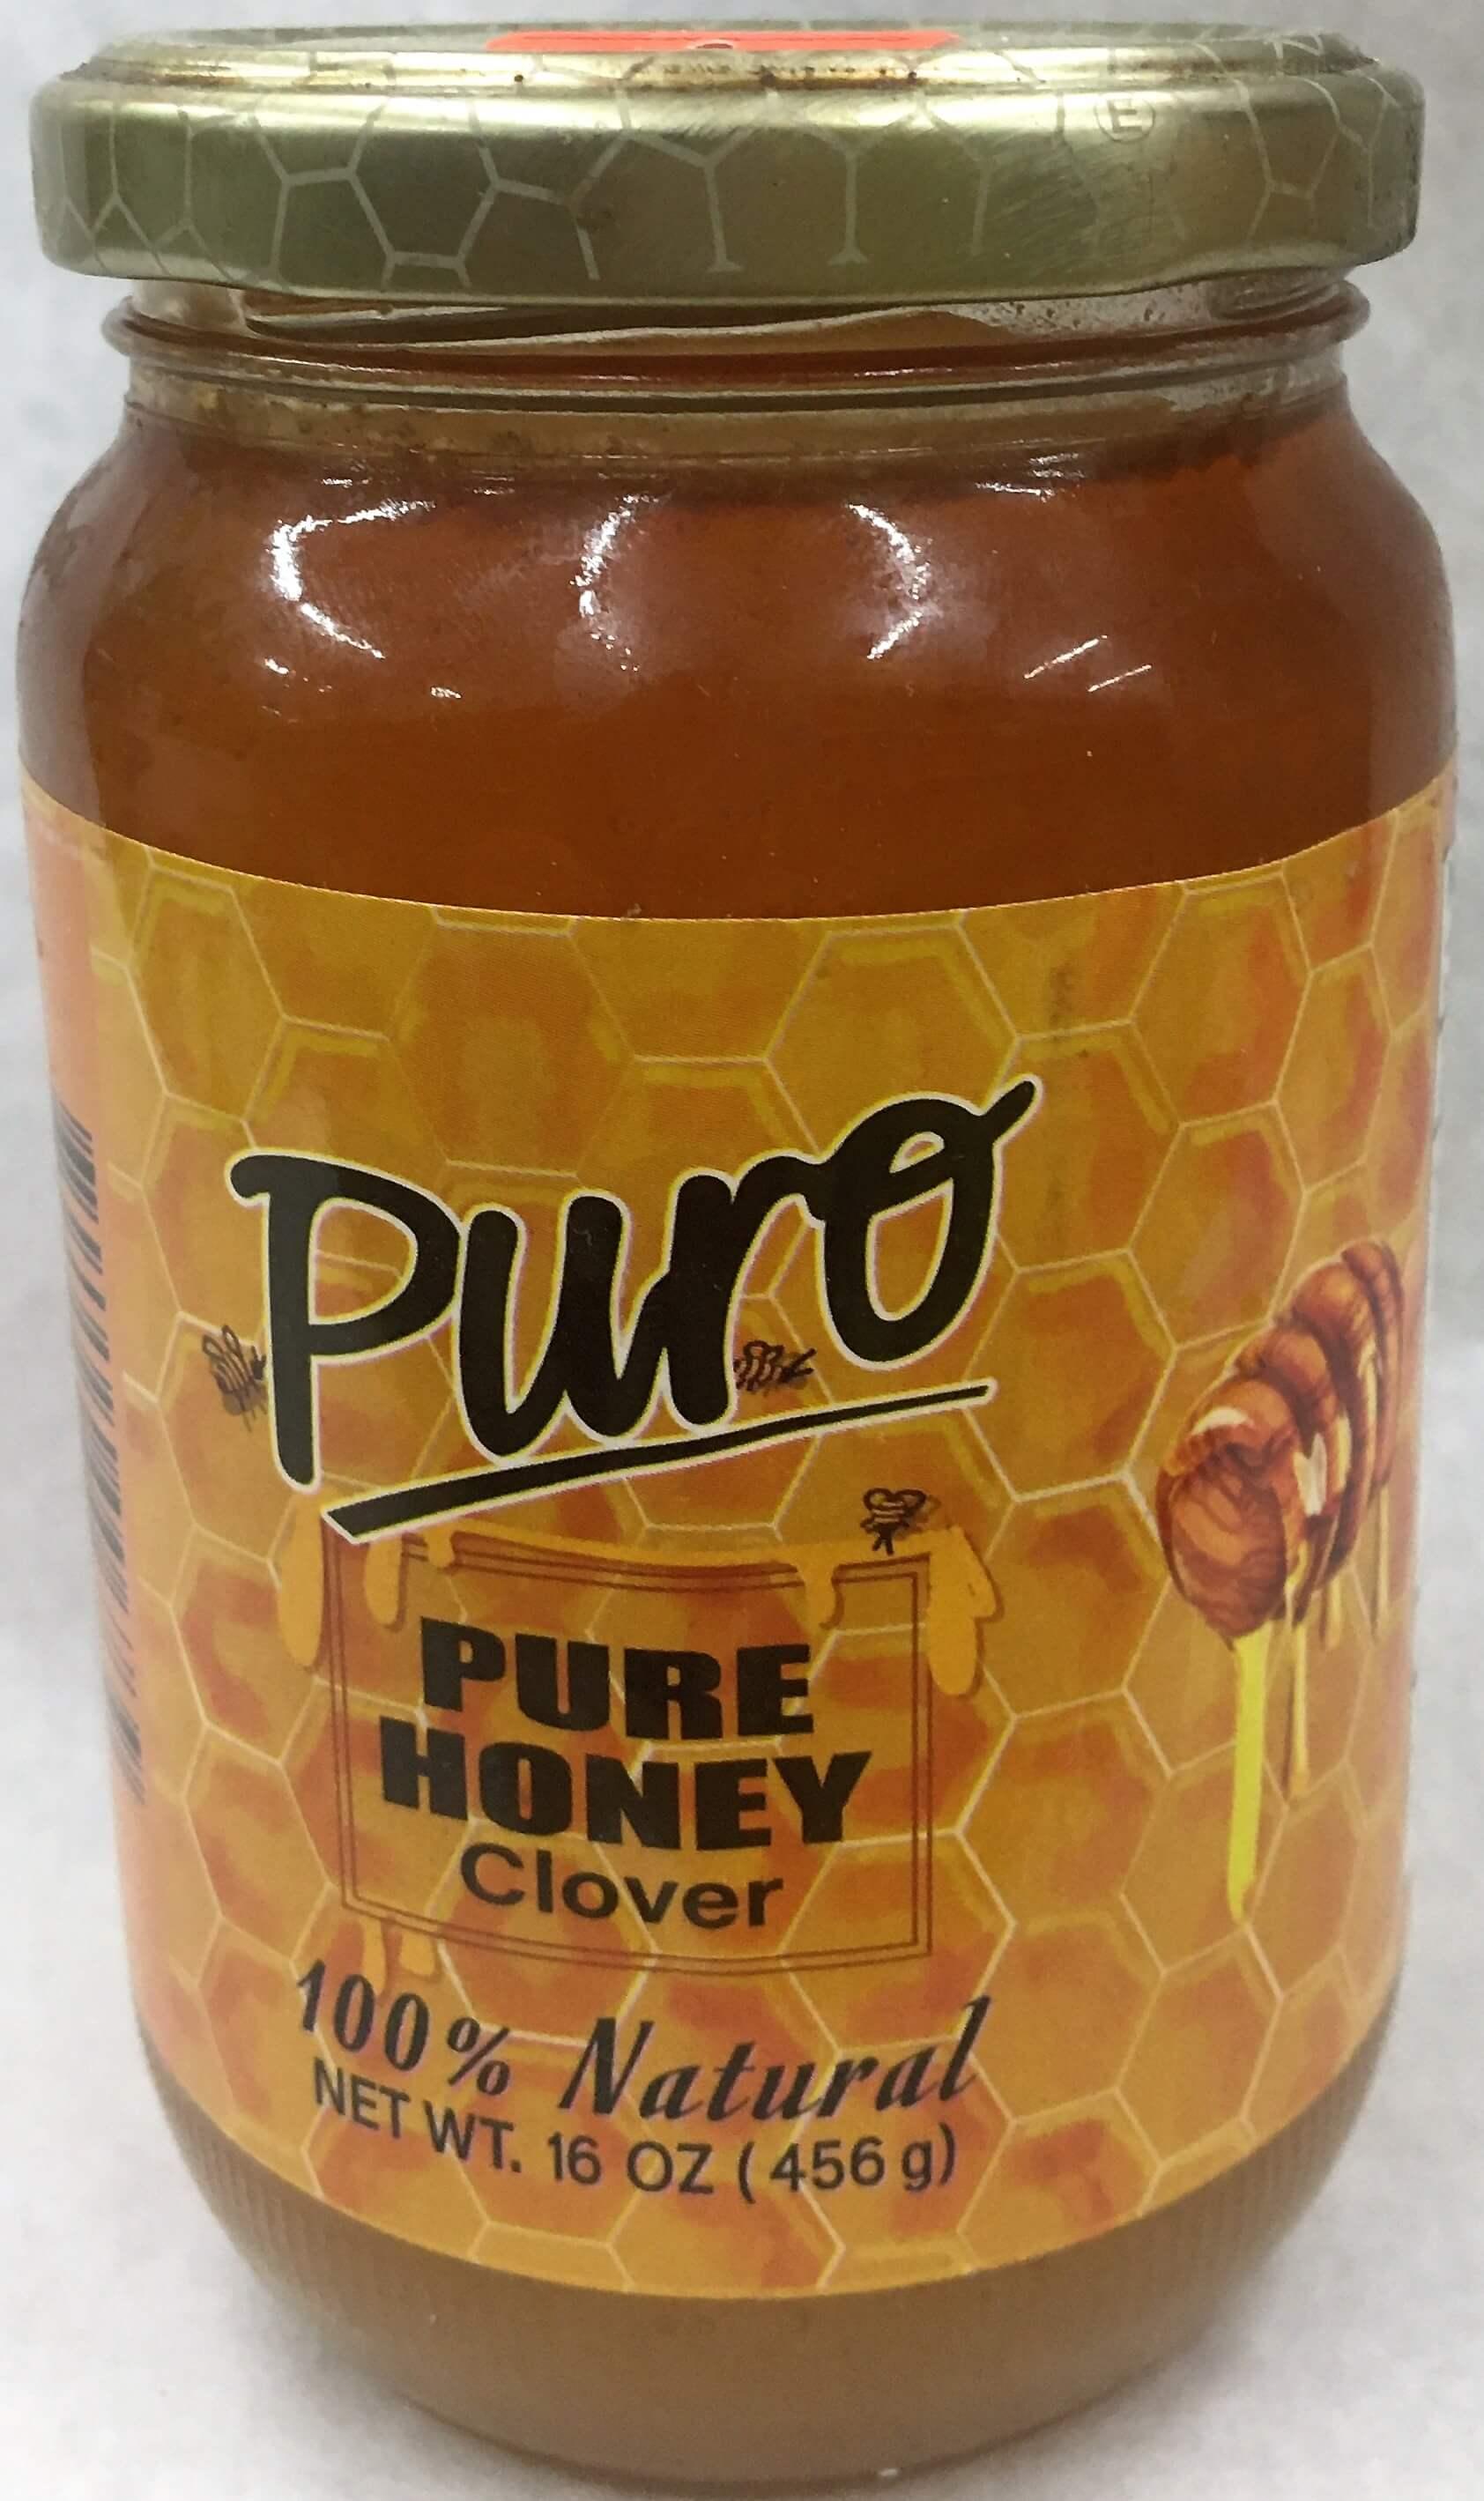 Puro - Pure Honey Clover with Comb 16 oz